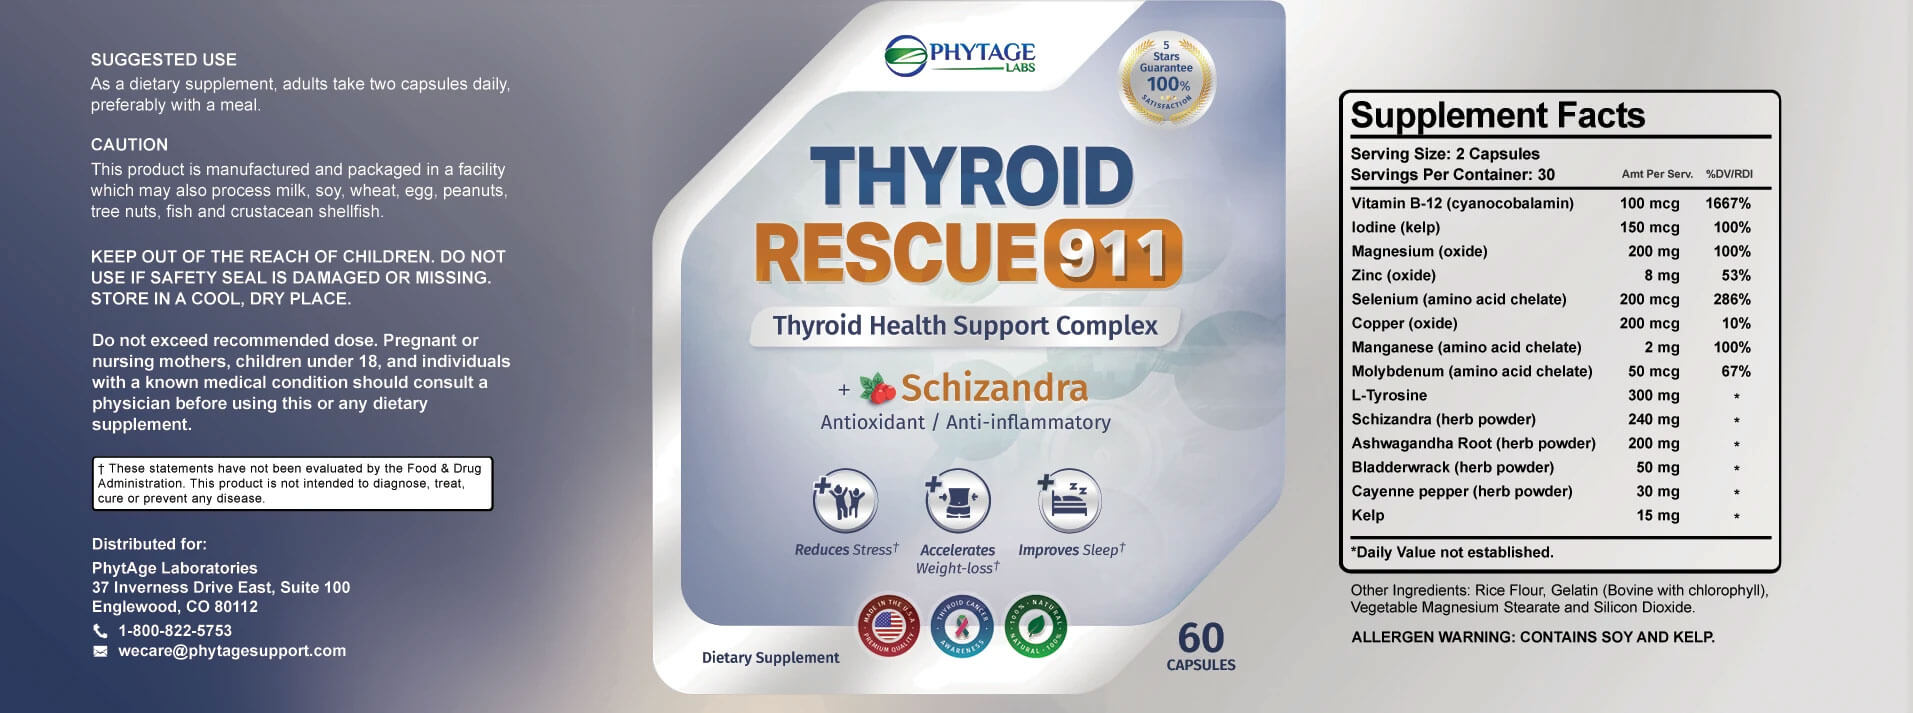 thyroid rescue 911 ingredients